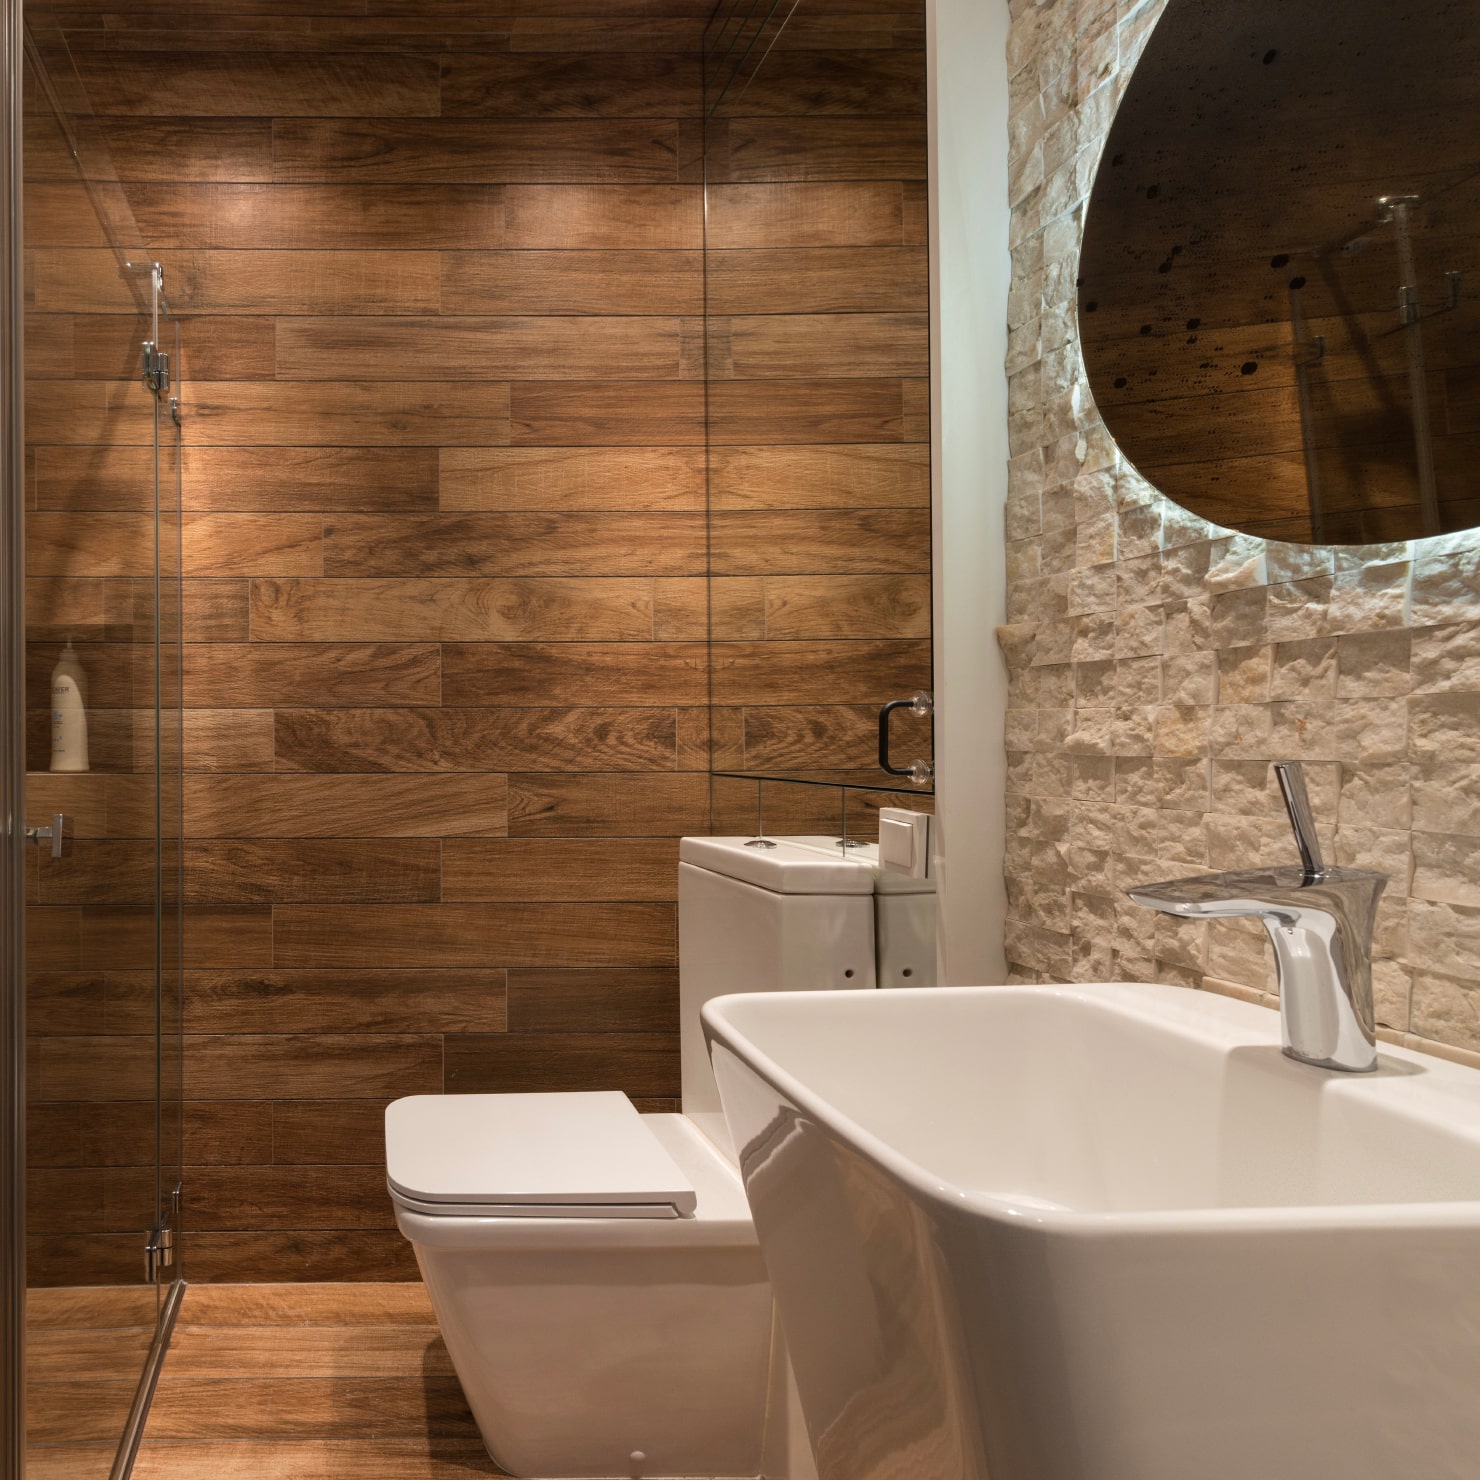 Bathroom | Interior Design Singapore | Interior Design Ideas